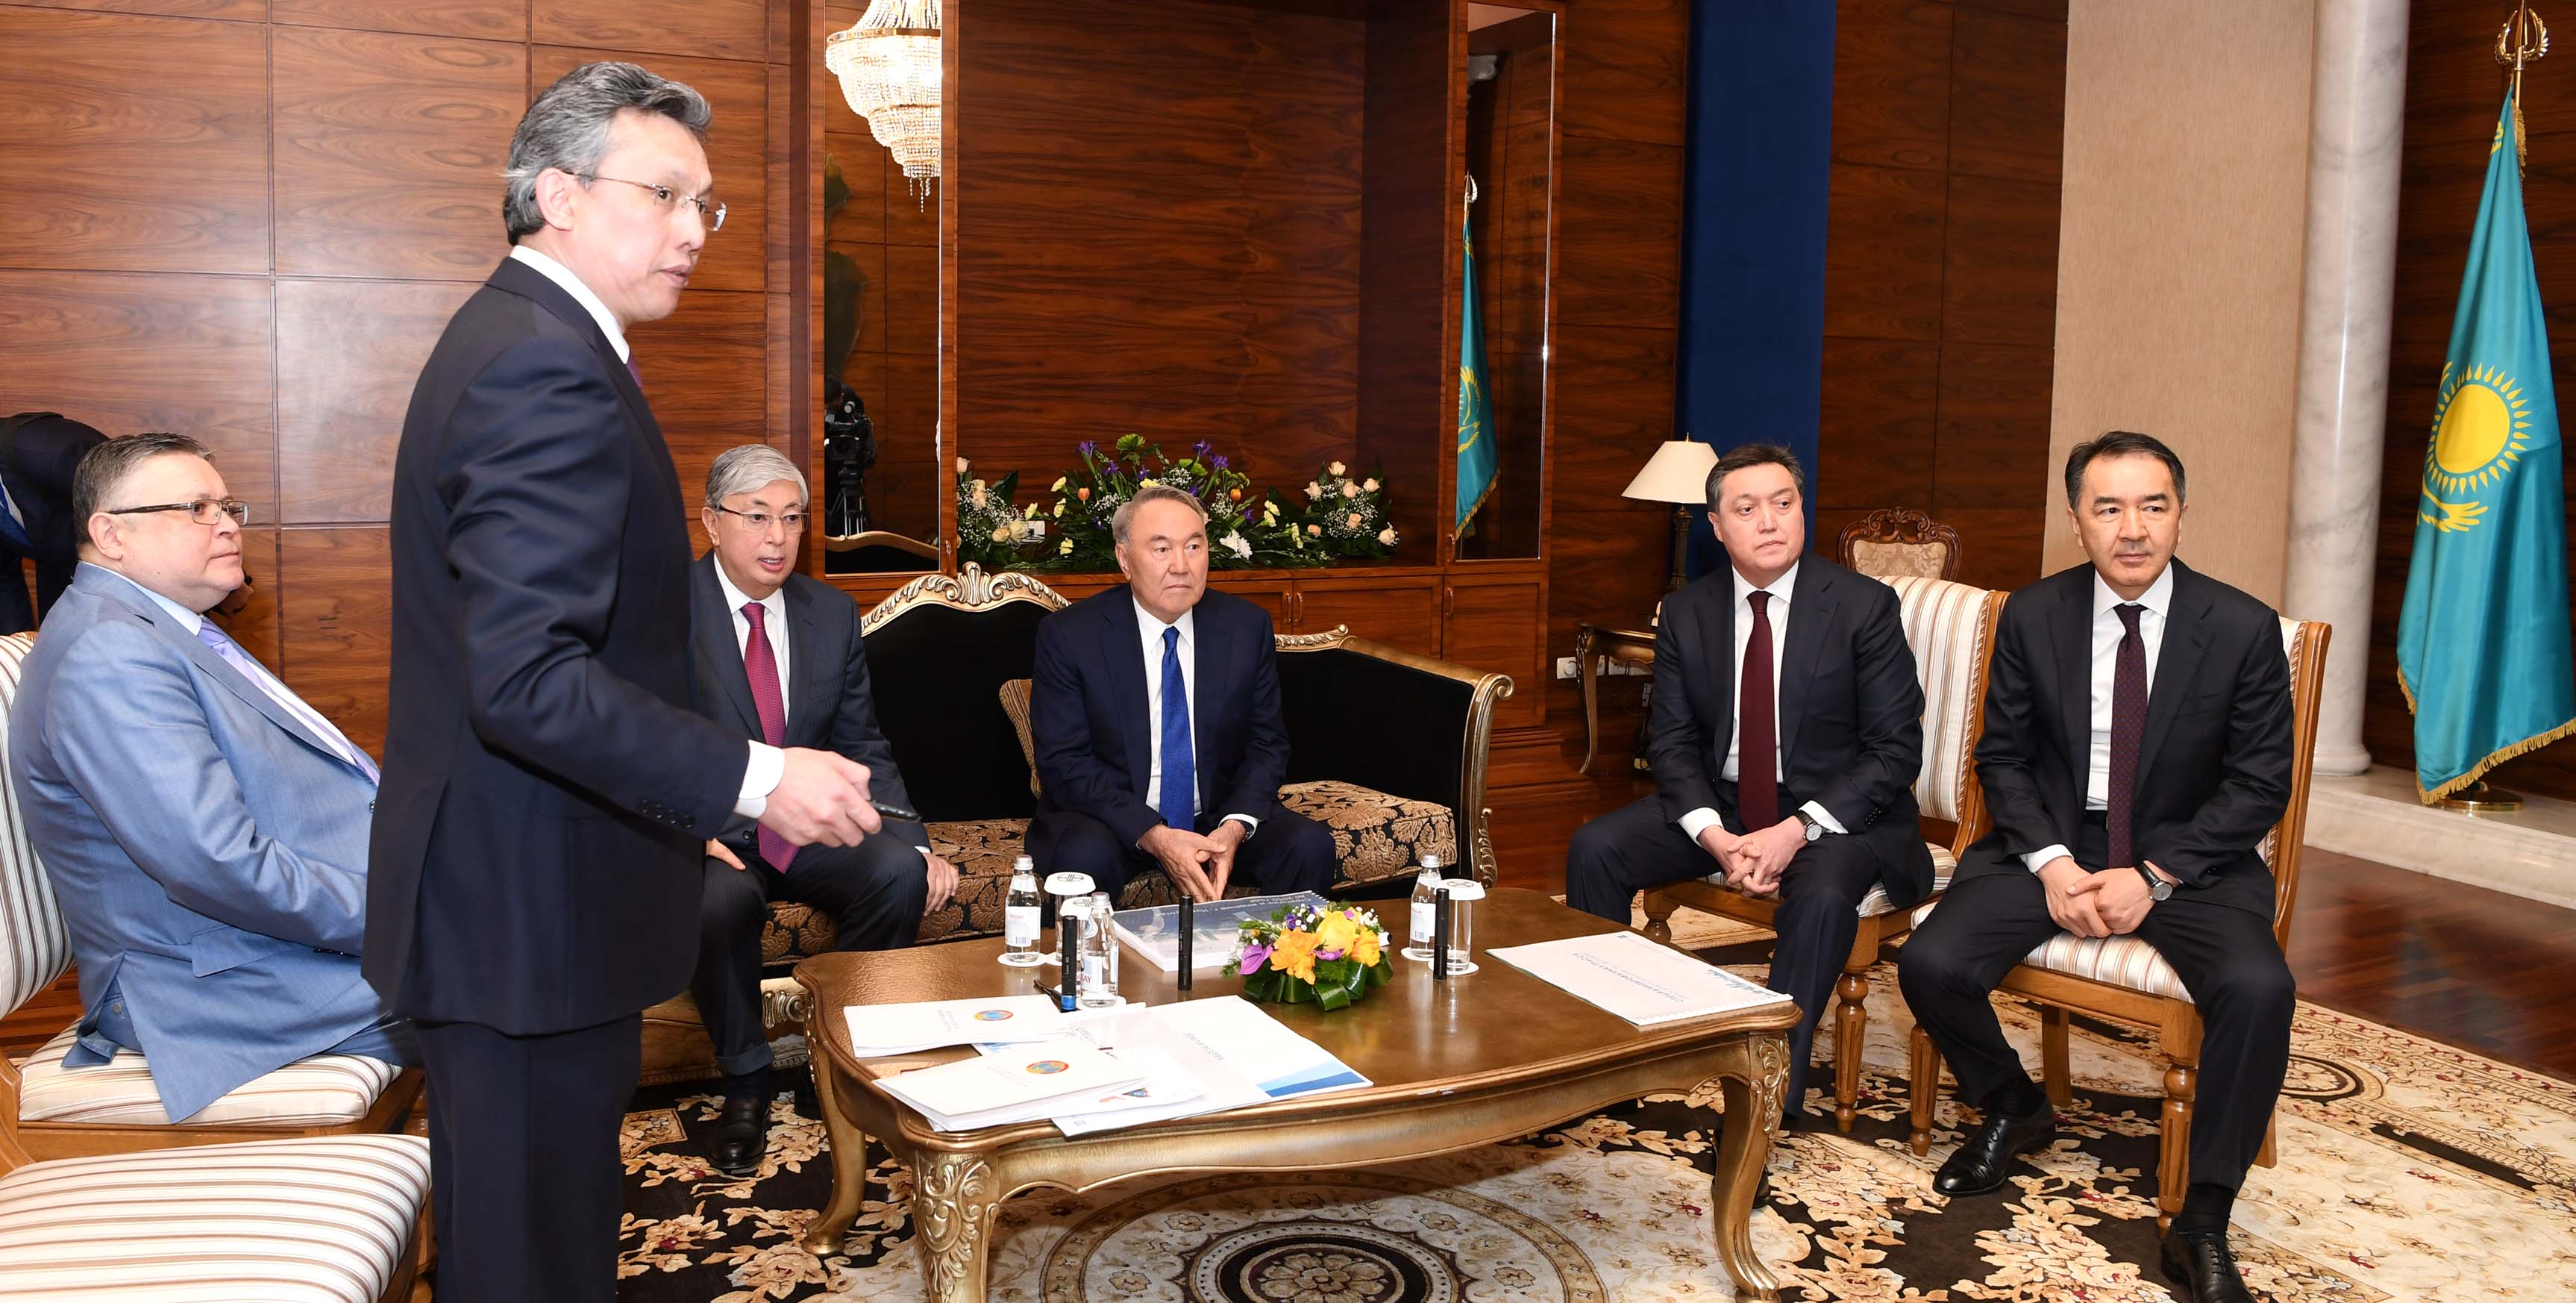 Қазақстанның Тұңғыш Президенті елорданы одан әрі дамыту жоспарымен танысты